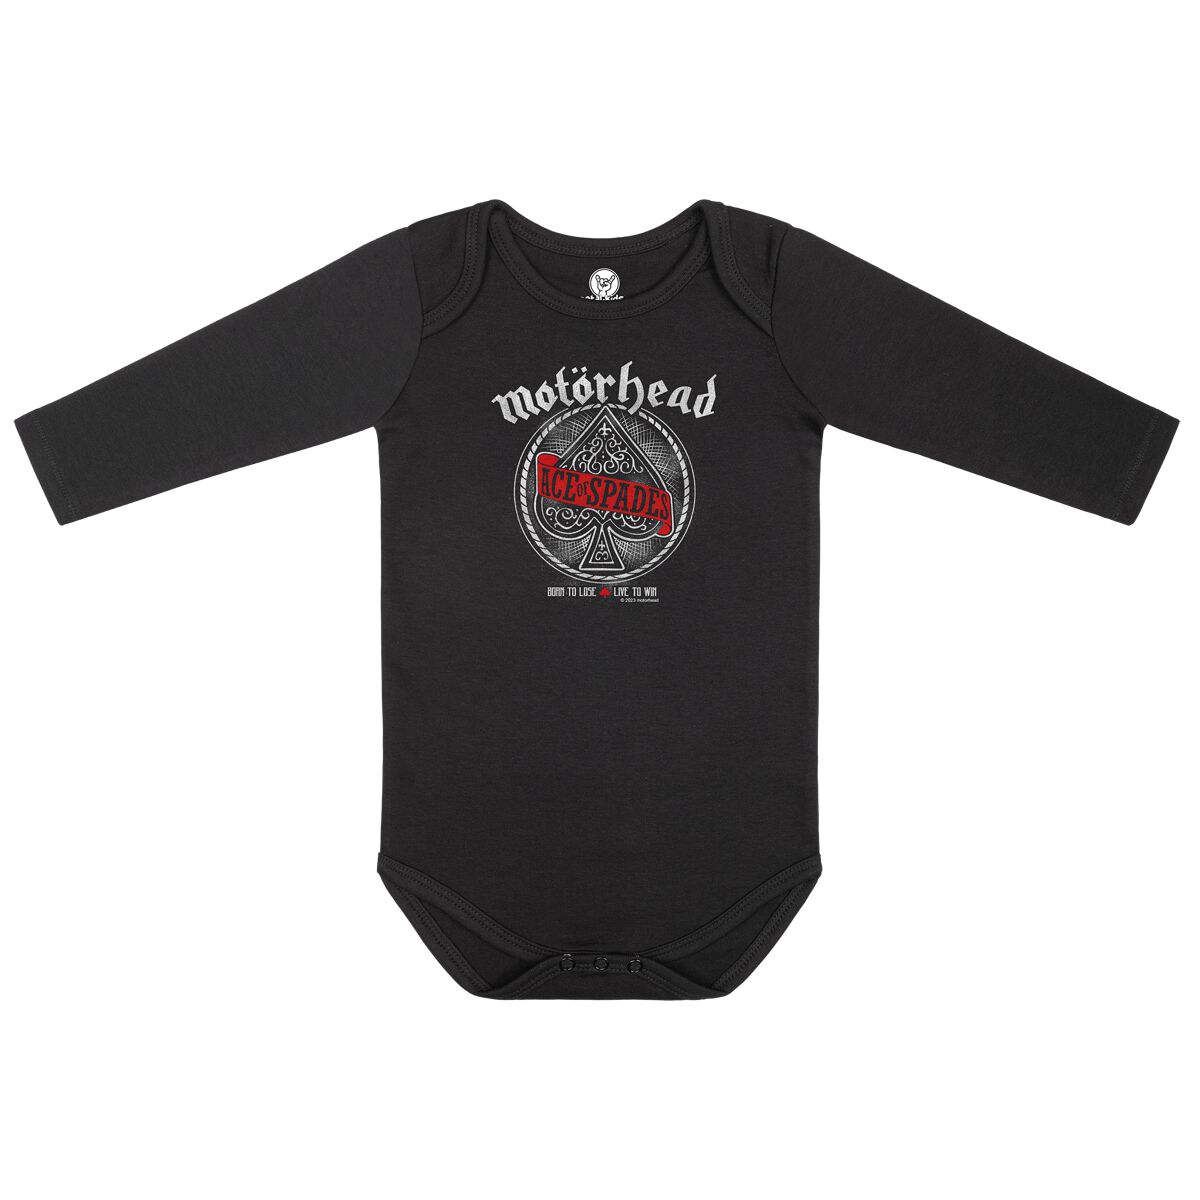 Motörhead Body für Neugeborene - Red Banner - für Mädchen & Jungen - schwarz  - Lizenziertes Merchandise!